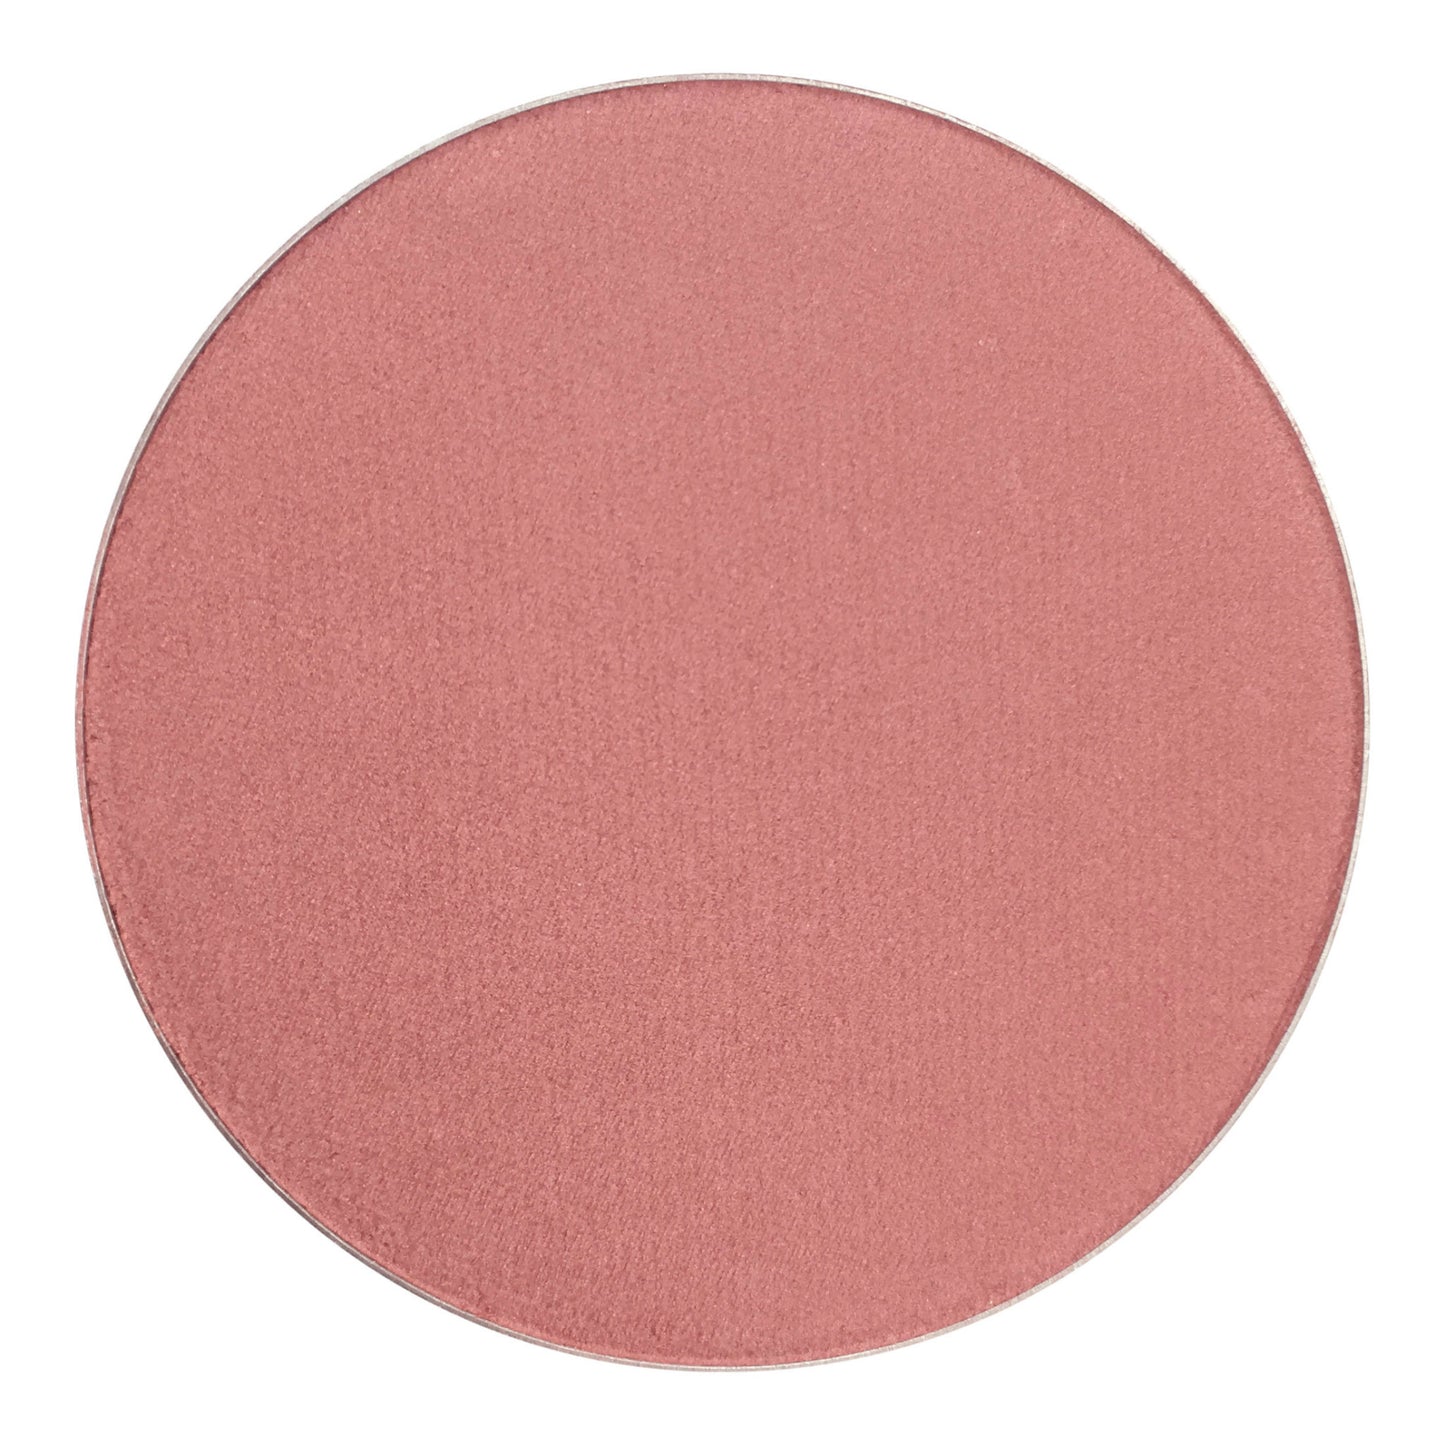 Pure Anada Pressed Mineral Cheek Colour (Blush)